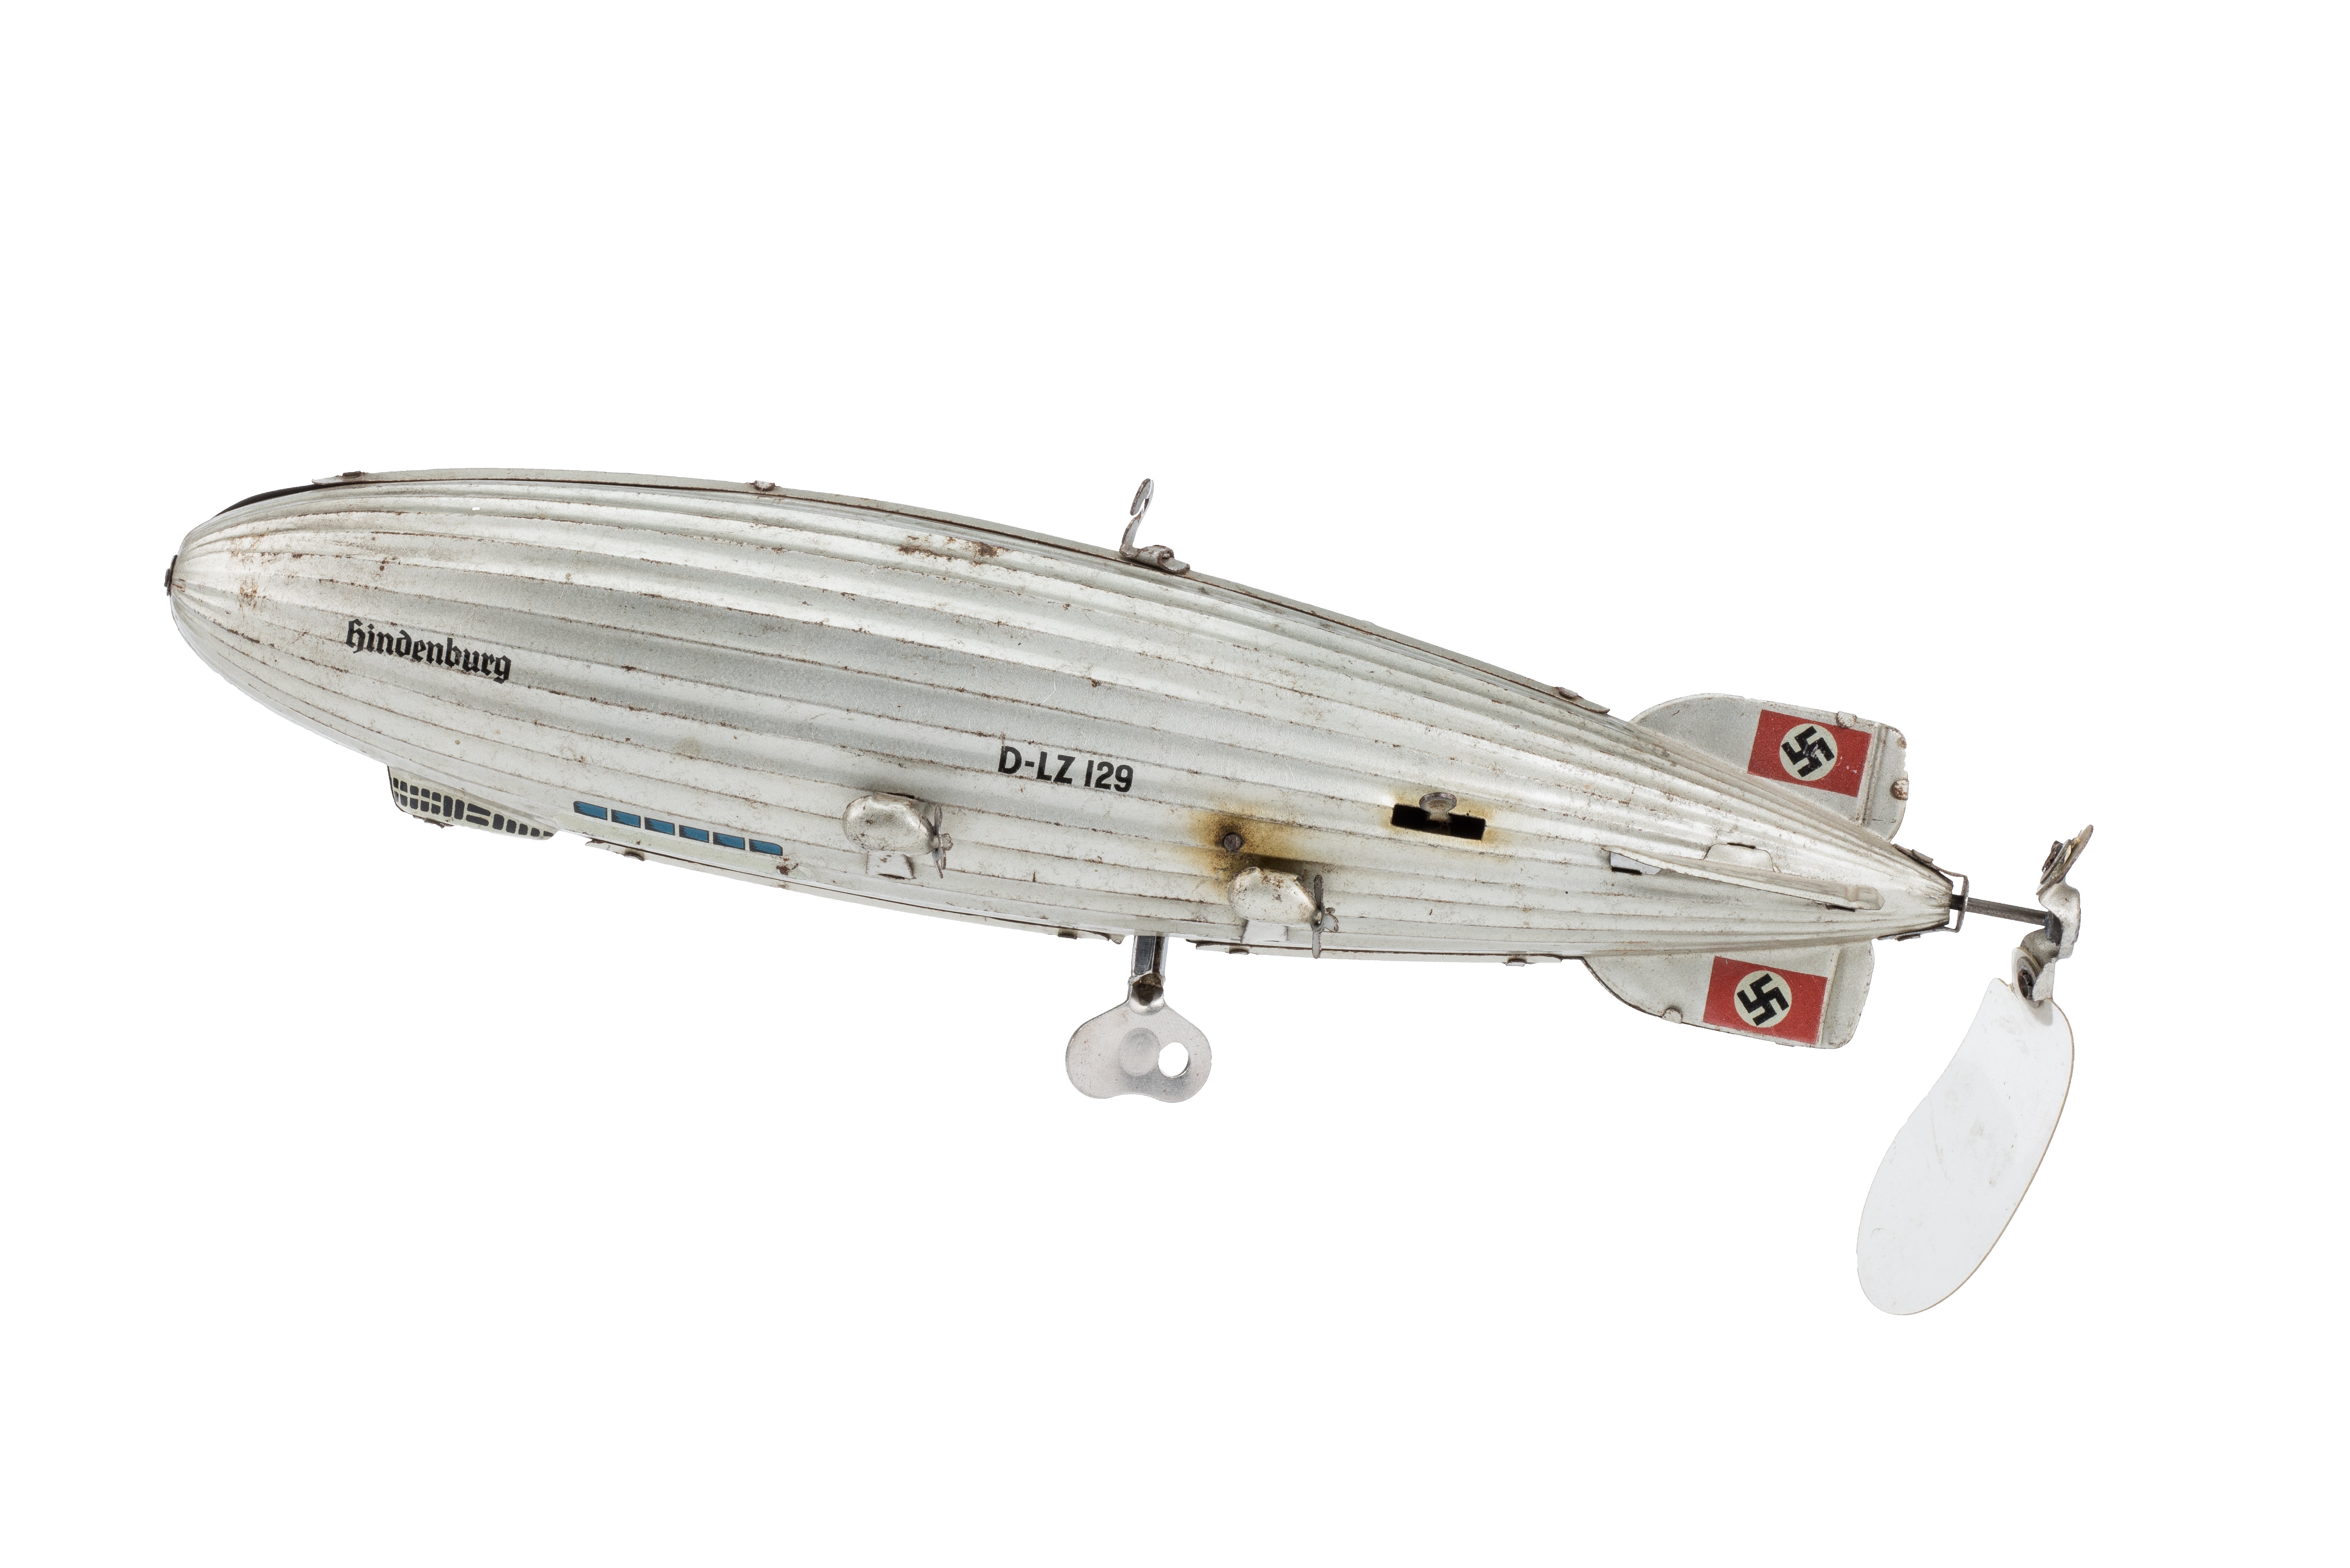 Spielzeug: LZ 129 „Hindenburg“ aus Blech (Zeppelin Museum Friedrichshafen GmbH CC BY-NC-SA)